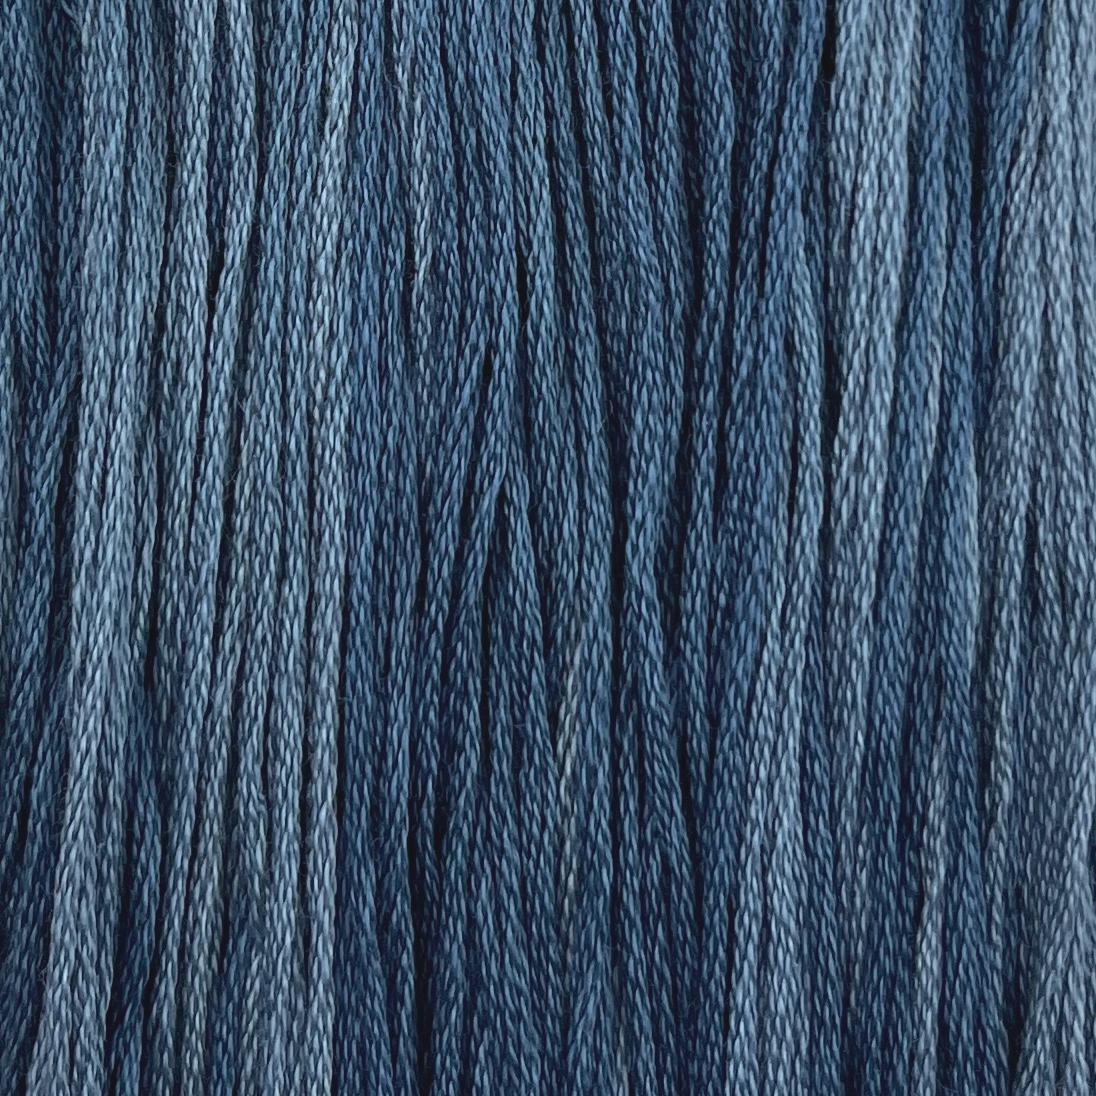 Smokey Blue - Hand Dyed Cross Stitch Fabric